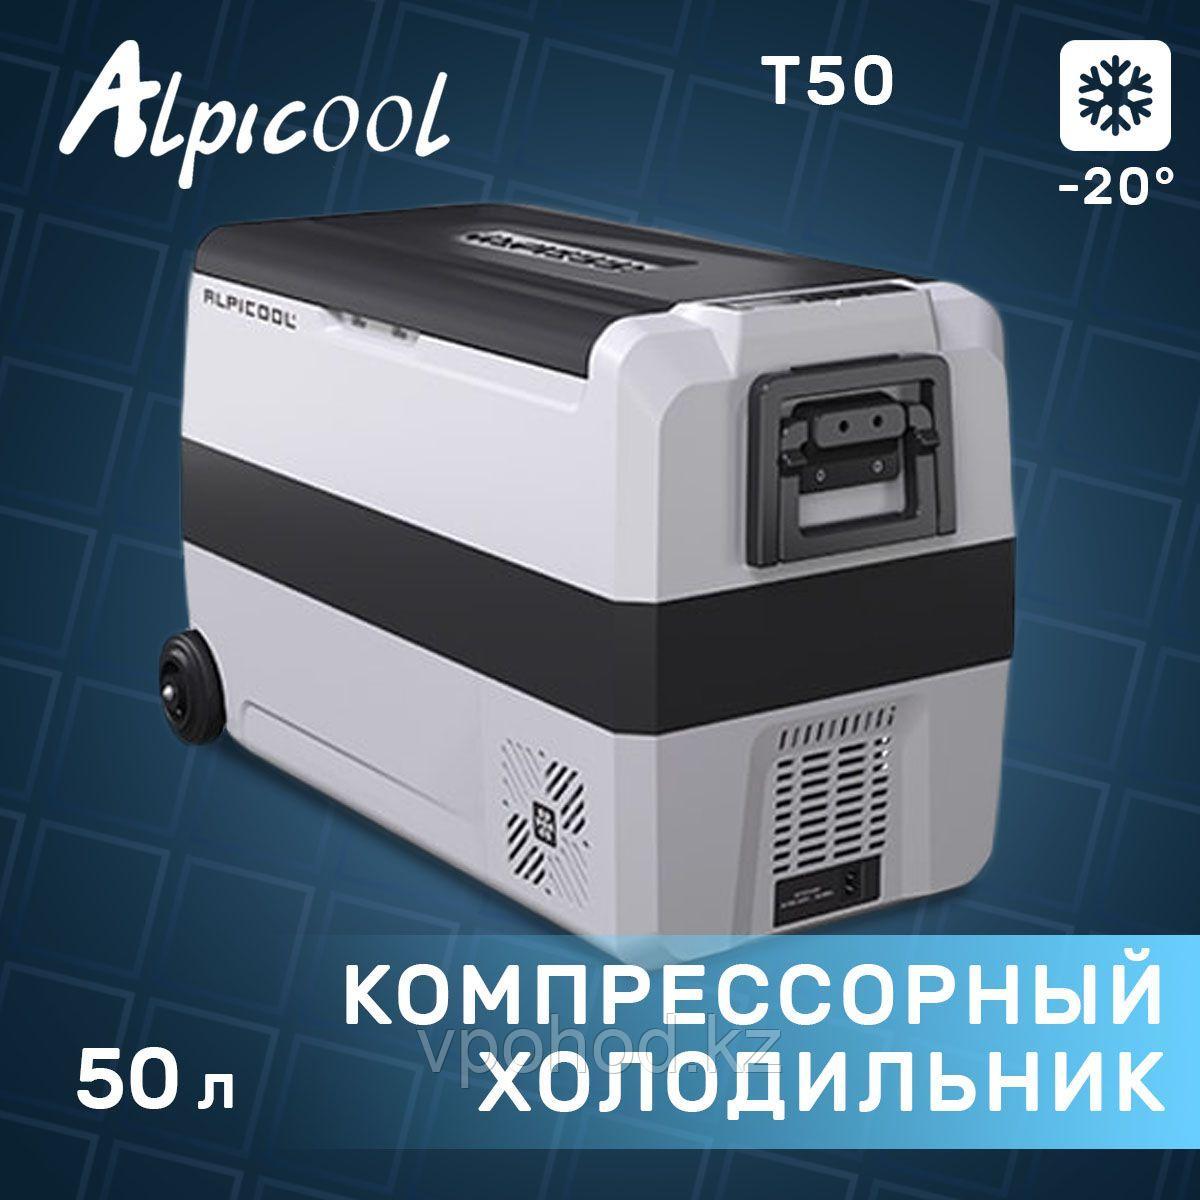 Компрессорный автохолодильник Alpicool T50 (50 л.)